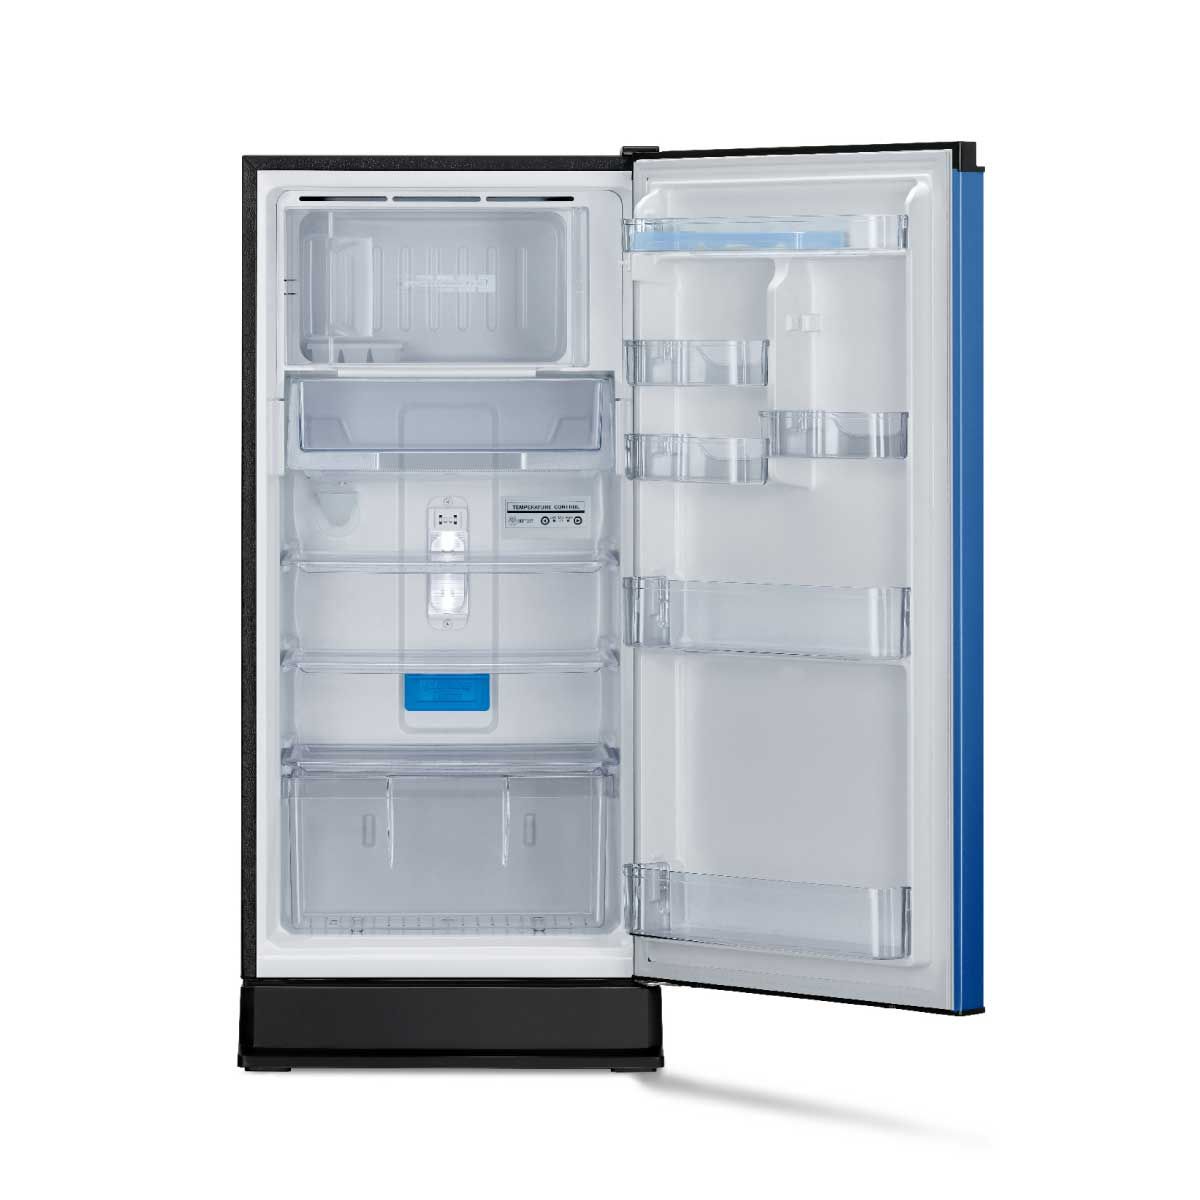 MITSUBISHI ELECTRIC ตู้เย็น 1 ประตู สีฟ้า 6.1Q รุ่น MR-18TA